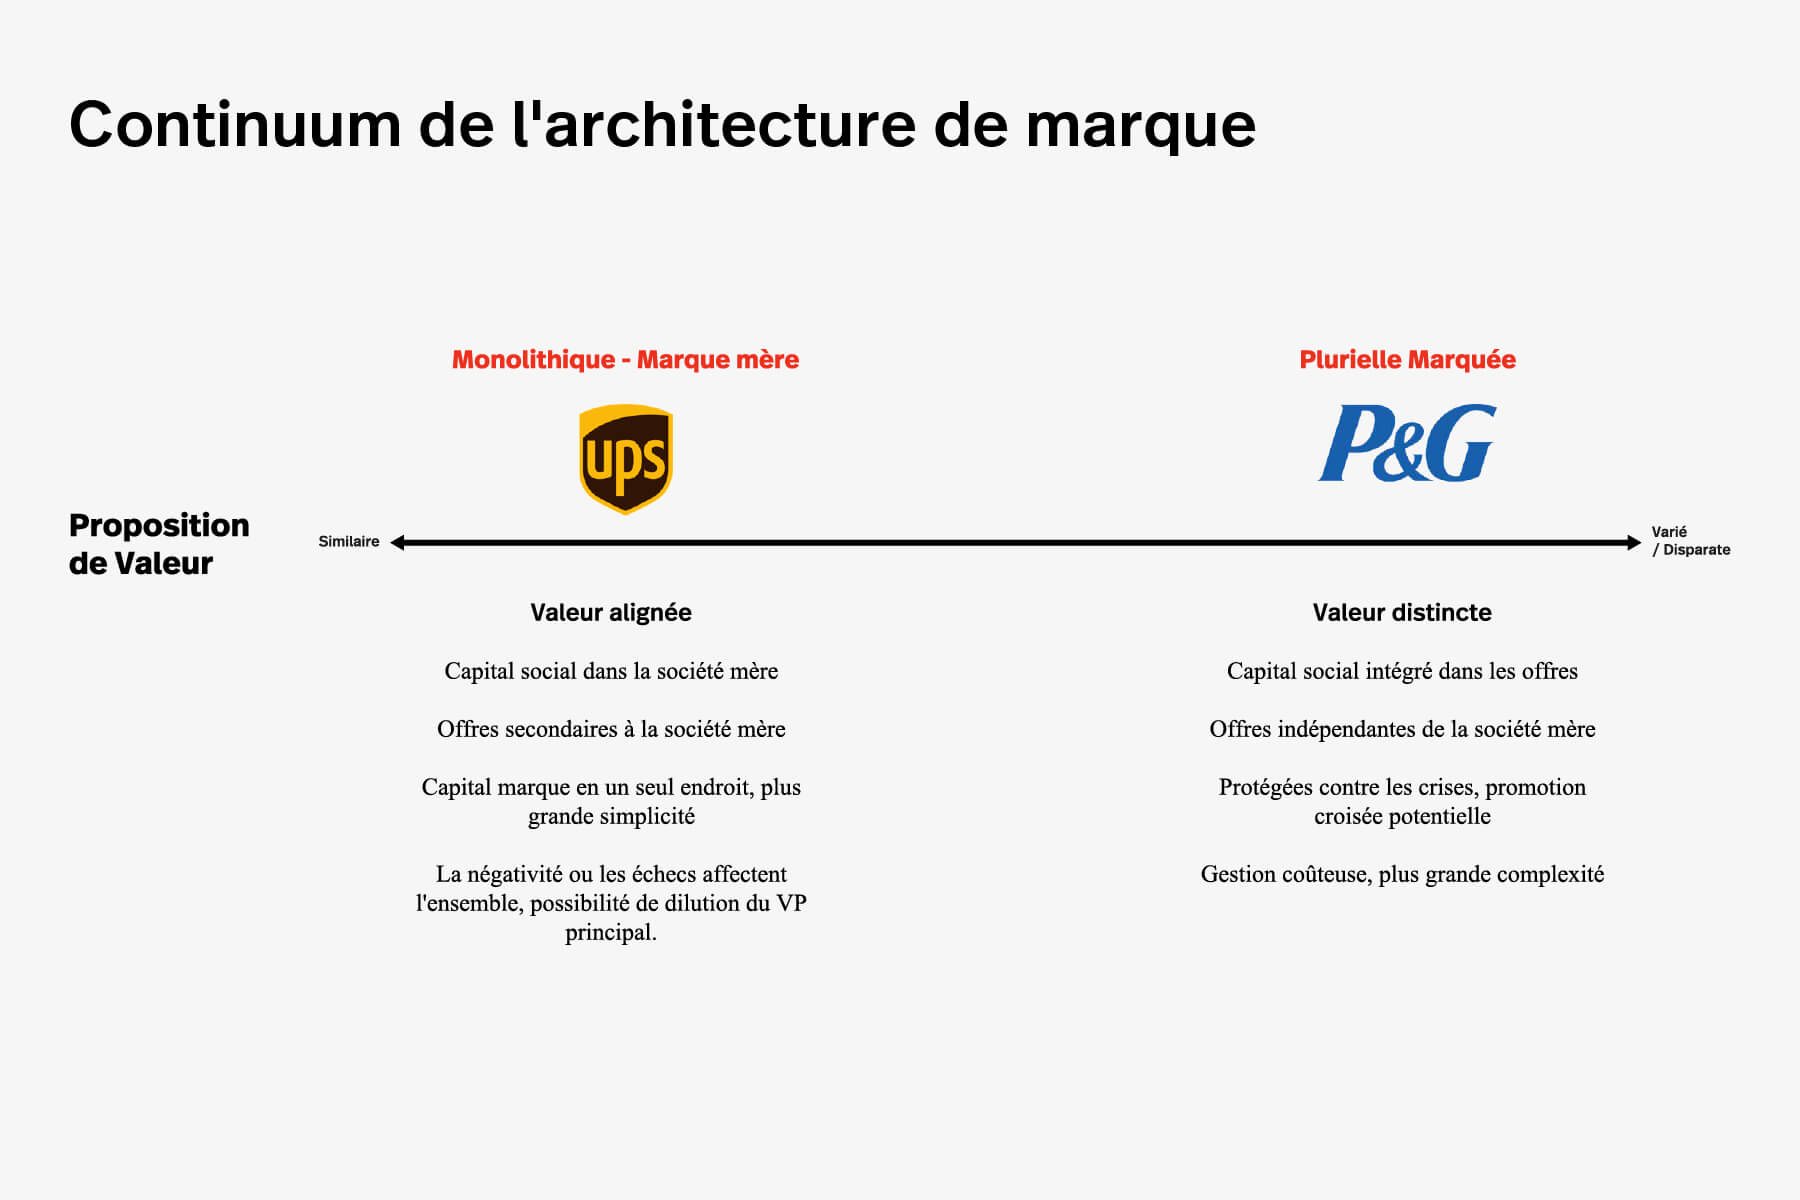 Architecture-marque-continuum-1.jpg